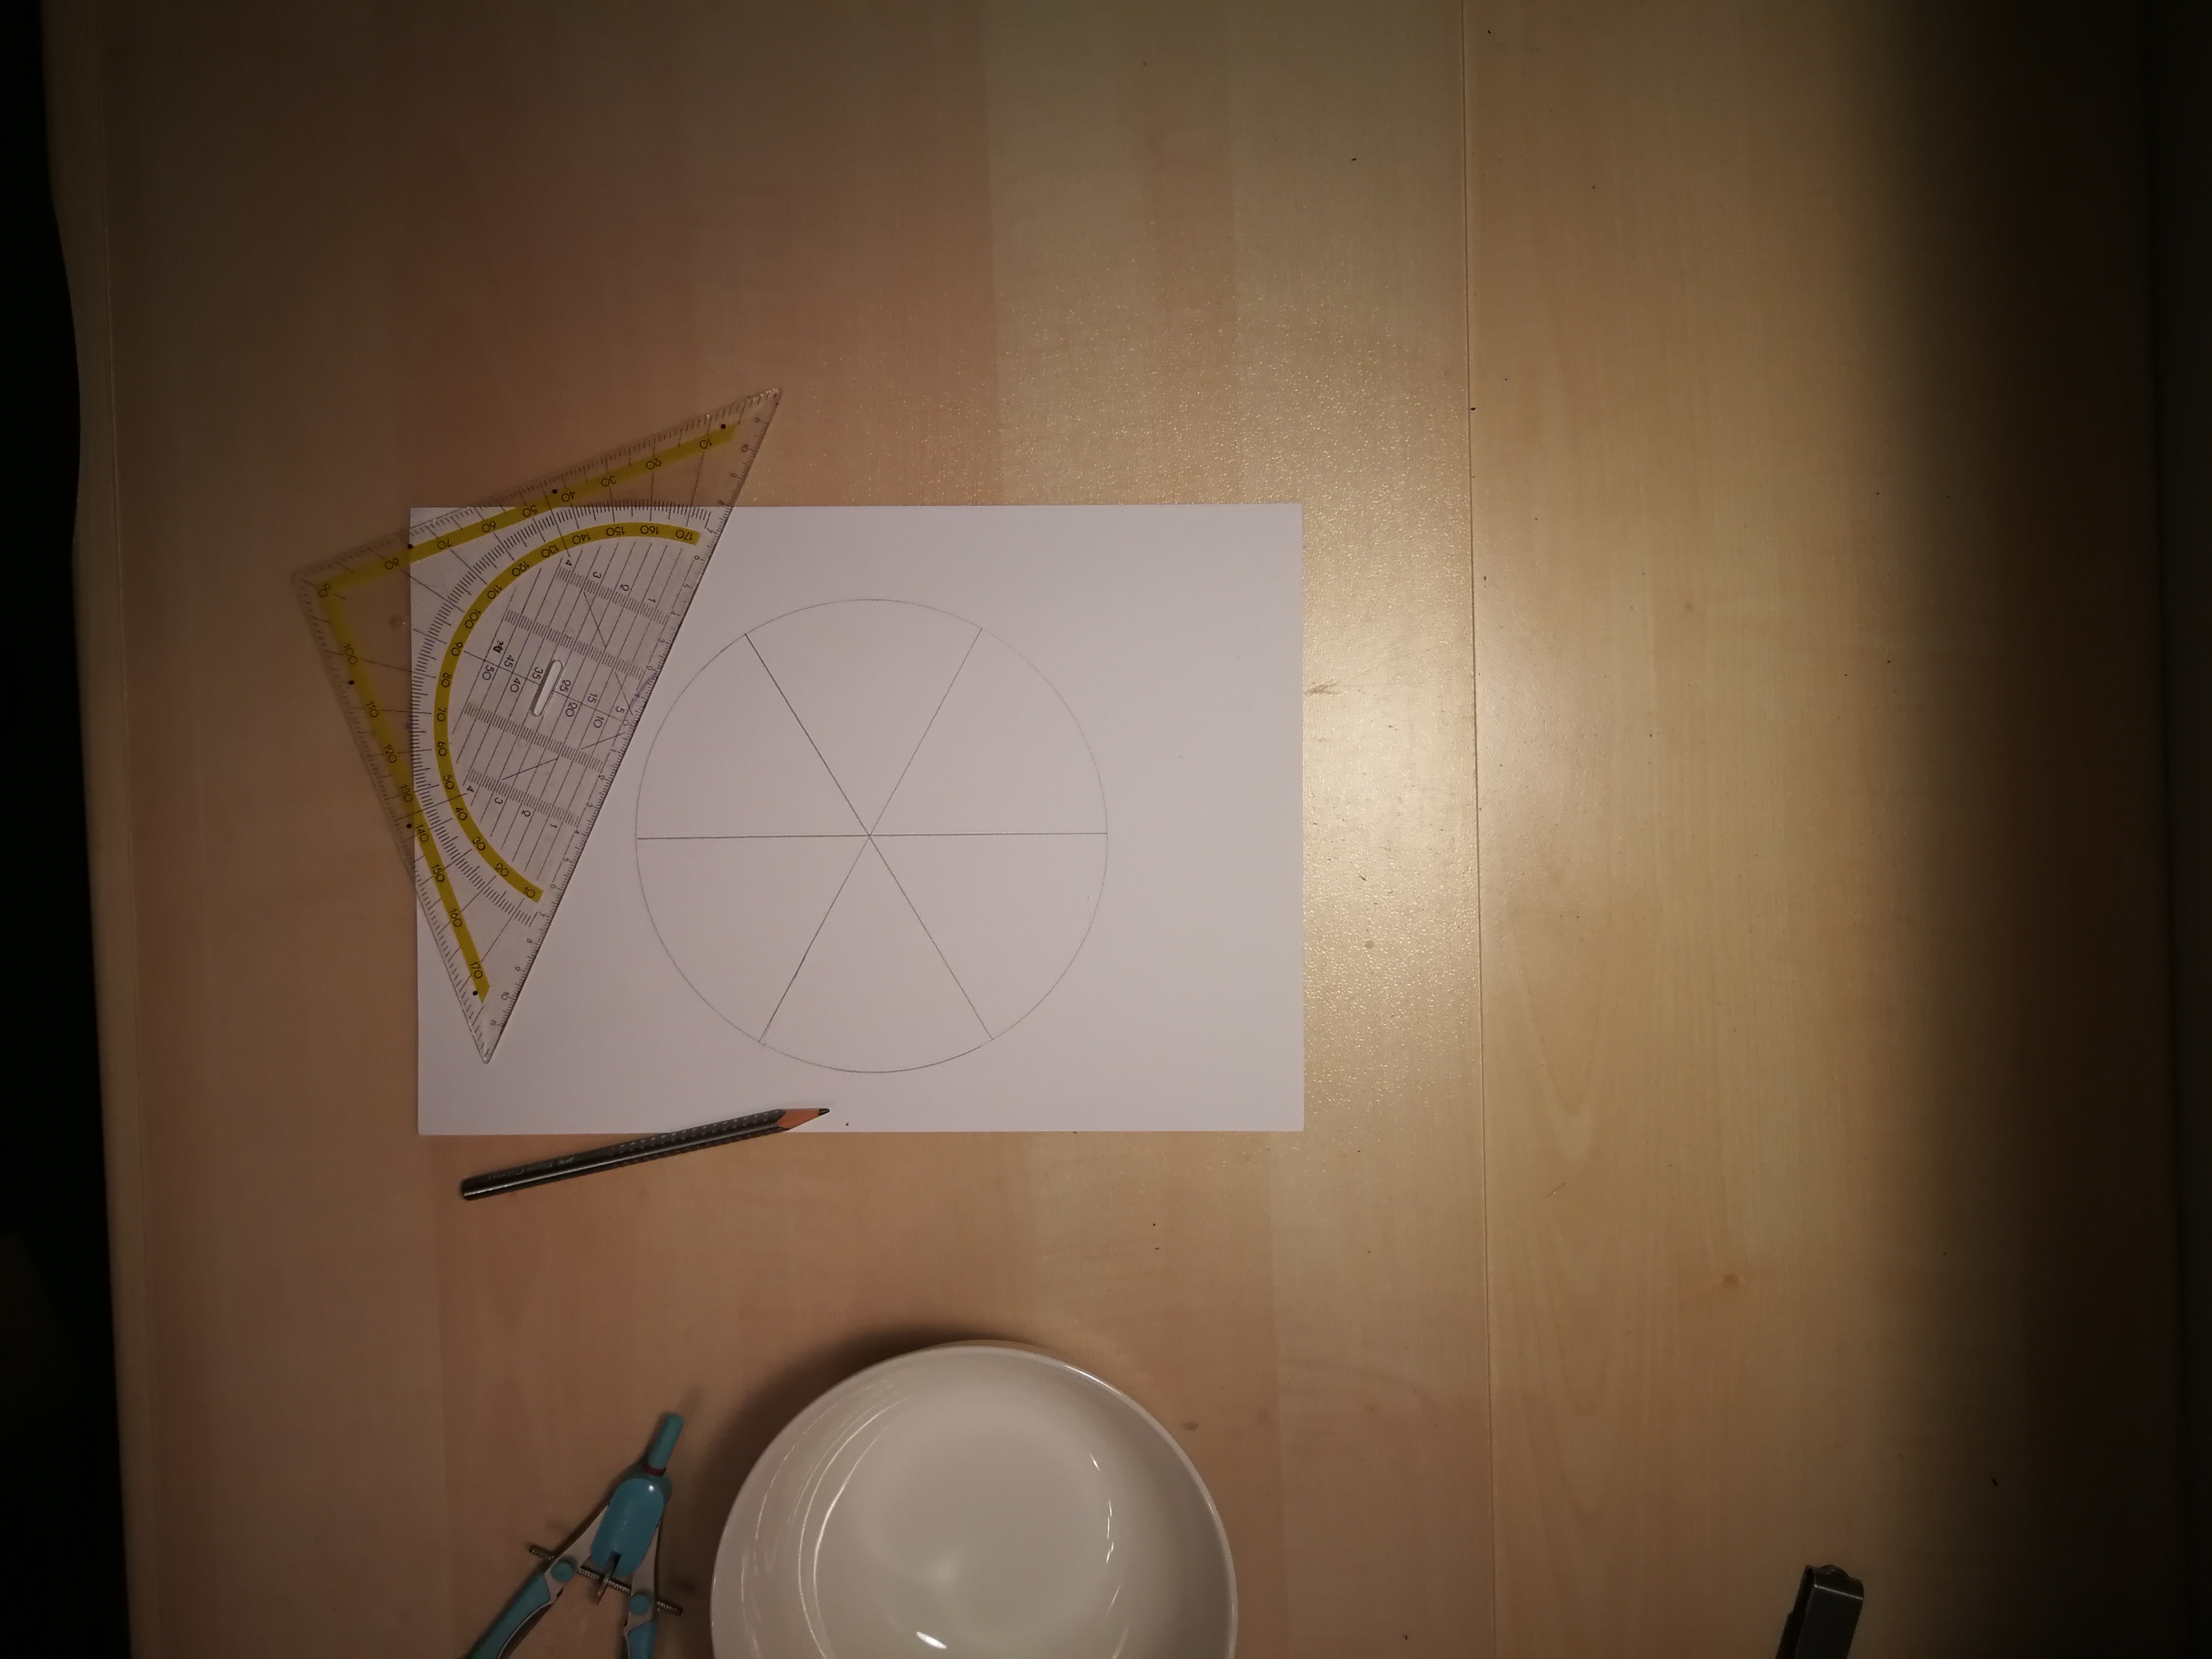 Geodreieck, Bleistift, Papier mit aufgezeichnetem Kreis